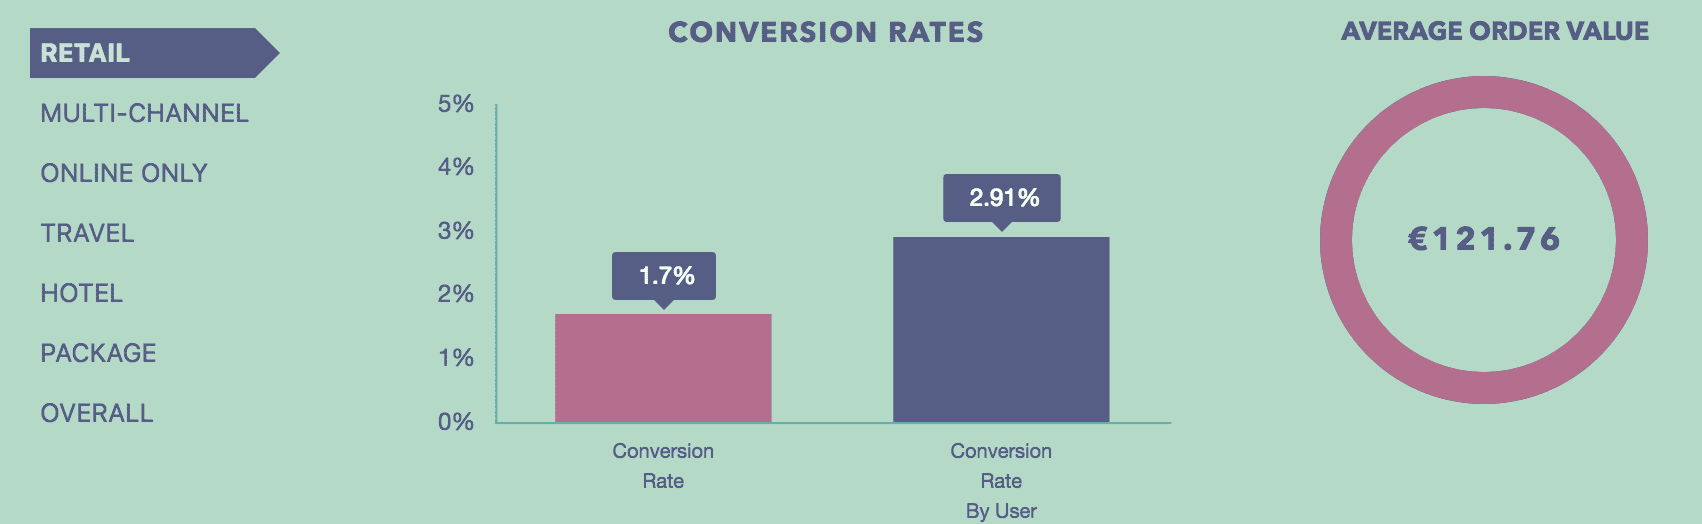 Współczynnik konwersji - wizyta vs użytkownik